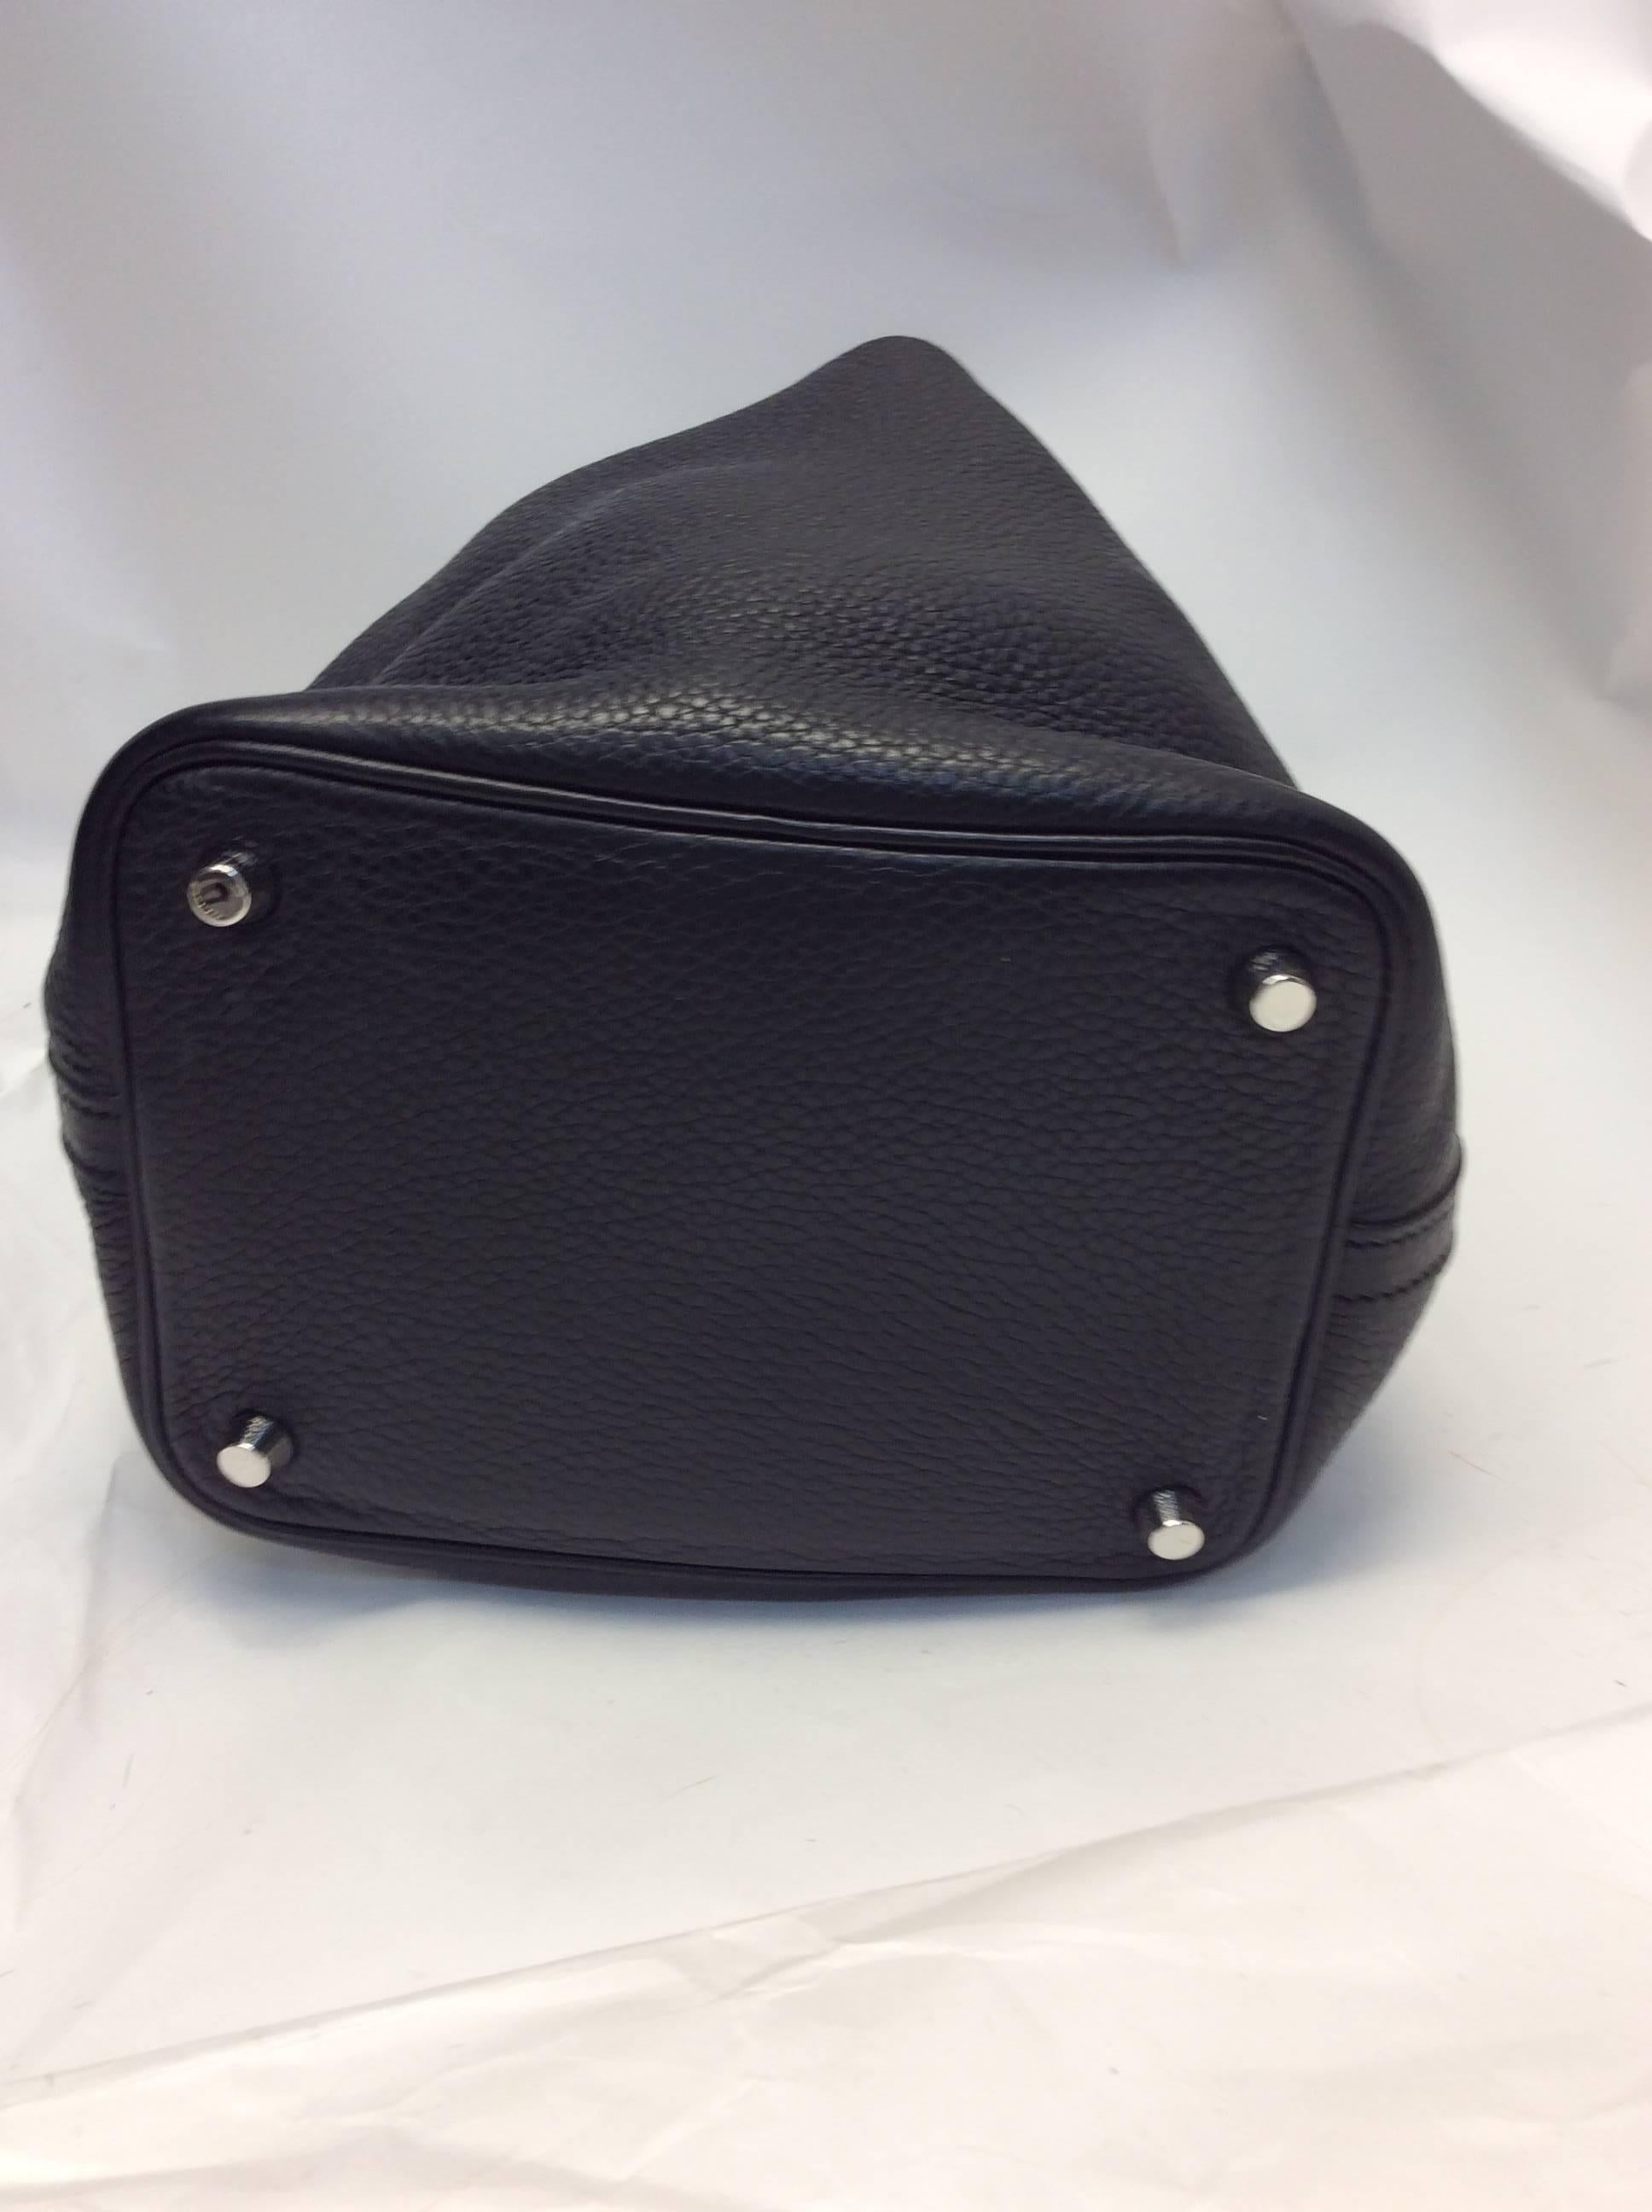 Hermes Picotin Black Leather Small Bag 2